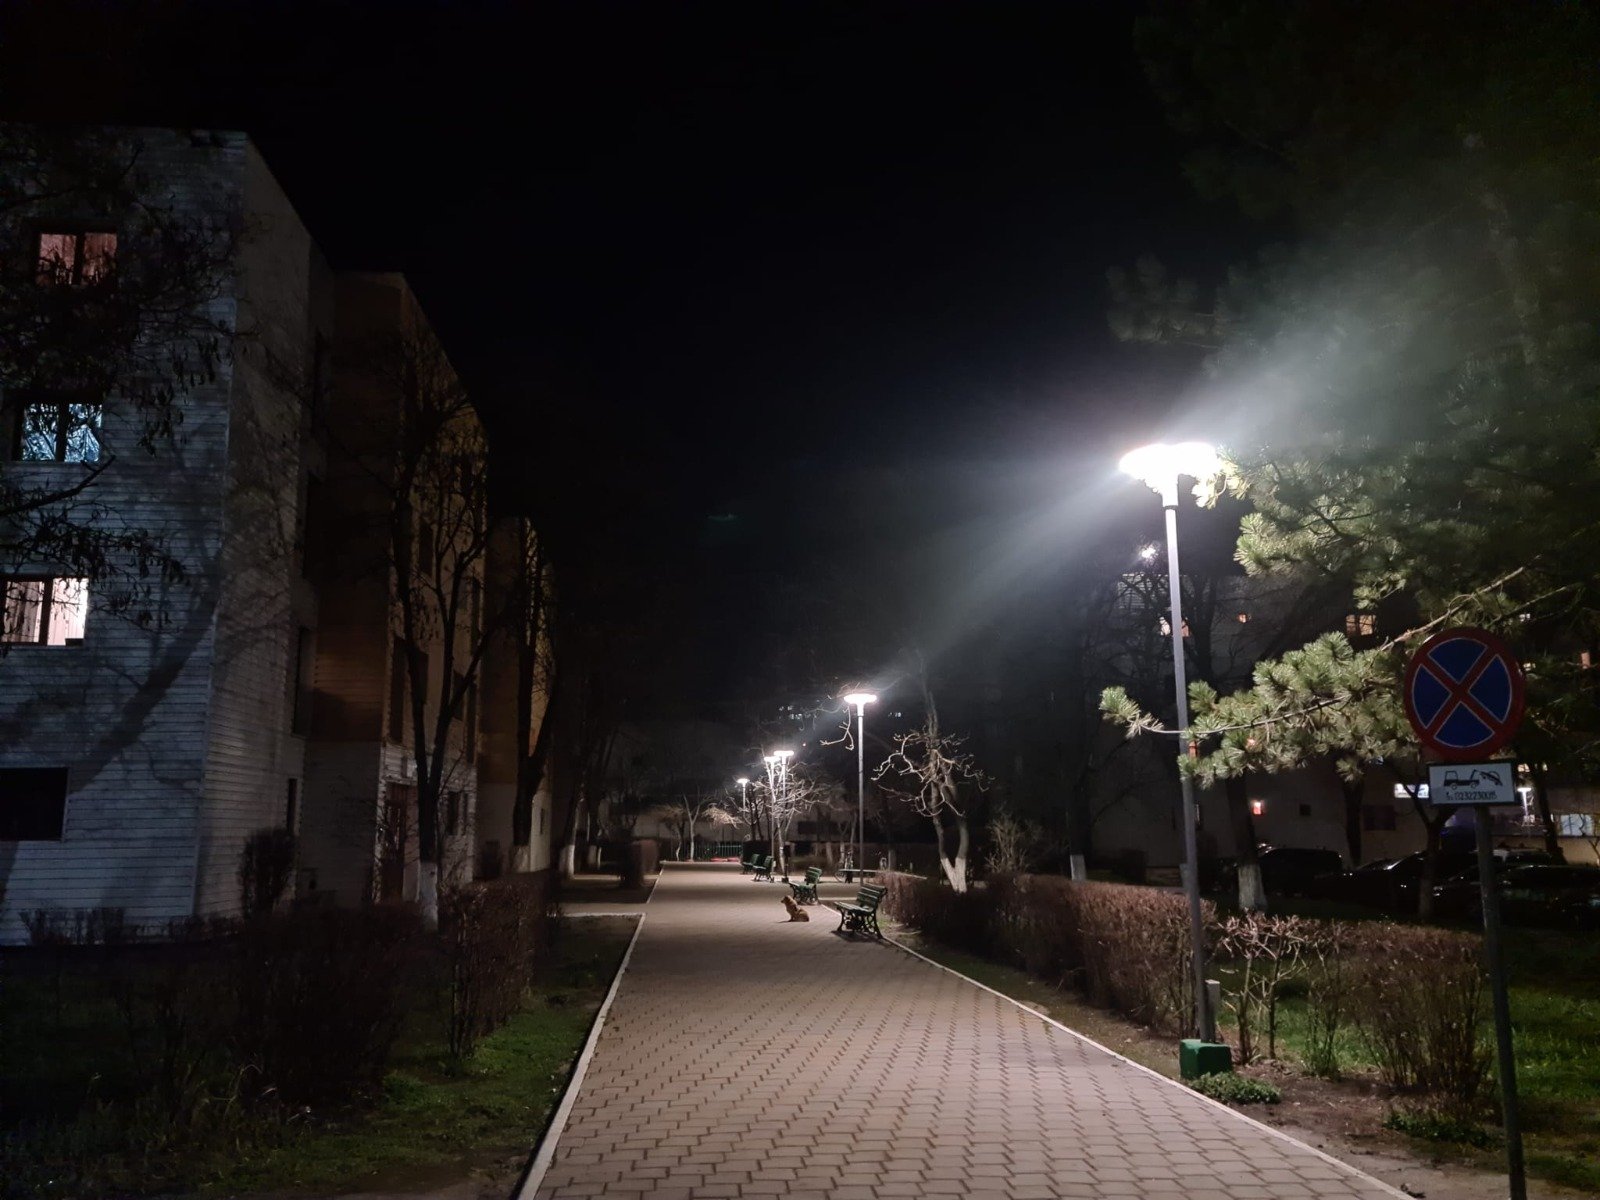  TUIASI are primul campus iluminat LED din țară, după o investiție de 200.000 de lei care a redus consumul de energie electrică din „Tudor Vladimirescu”